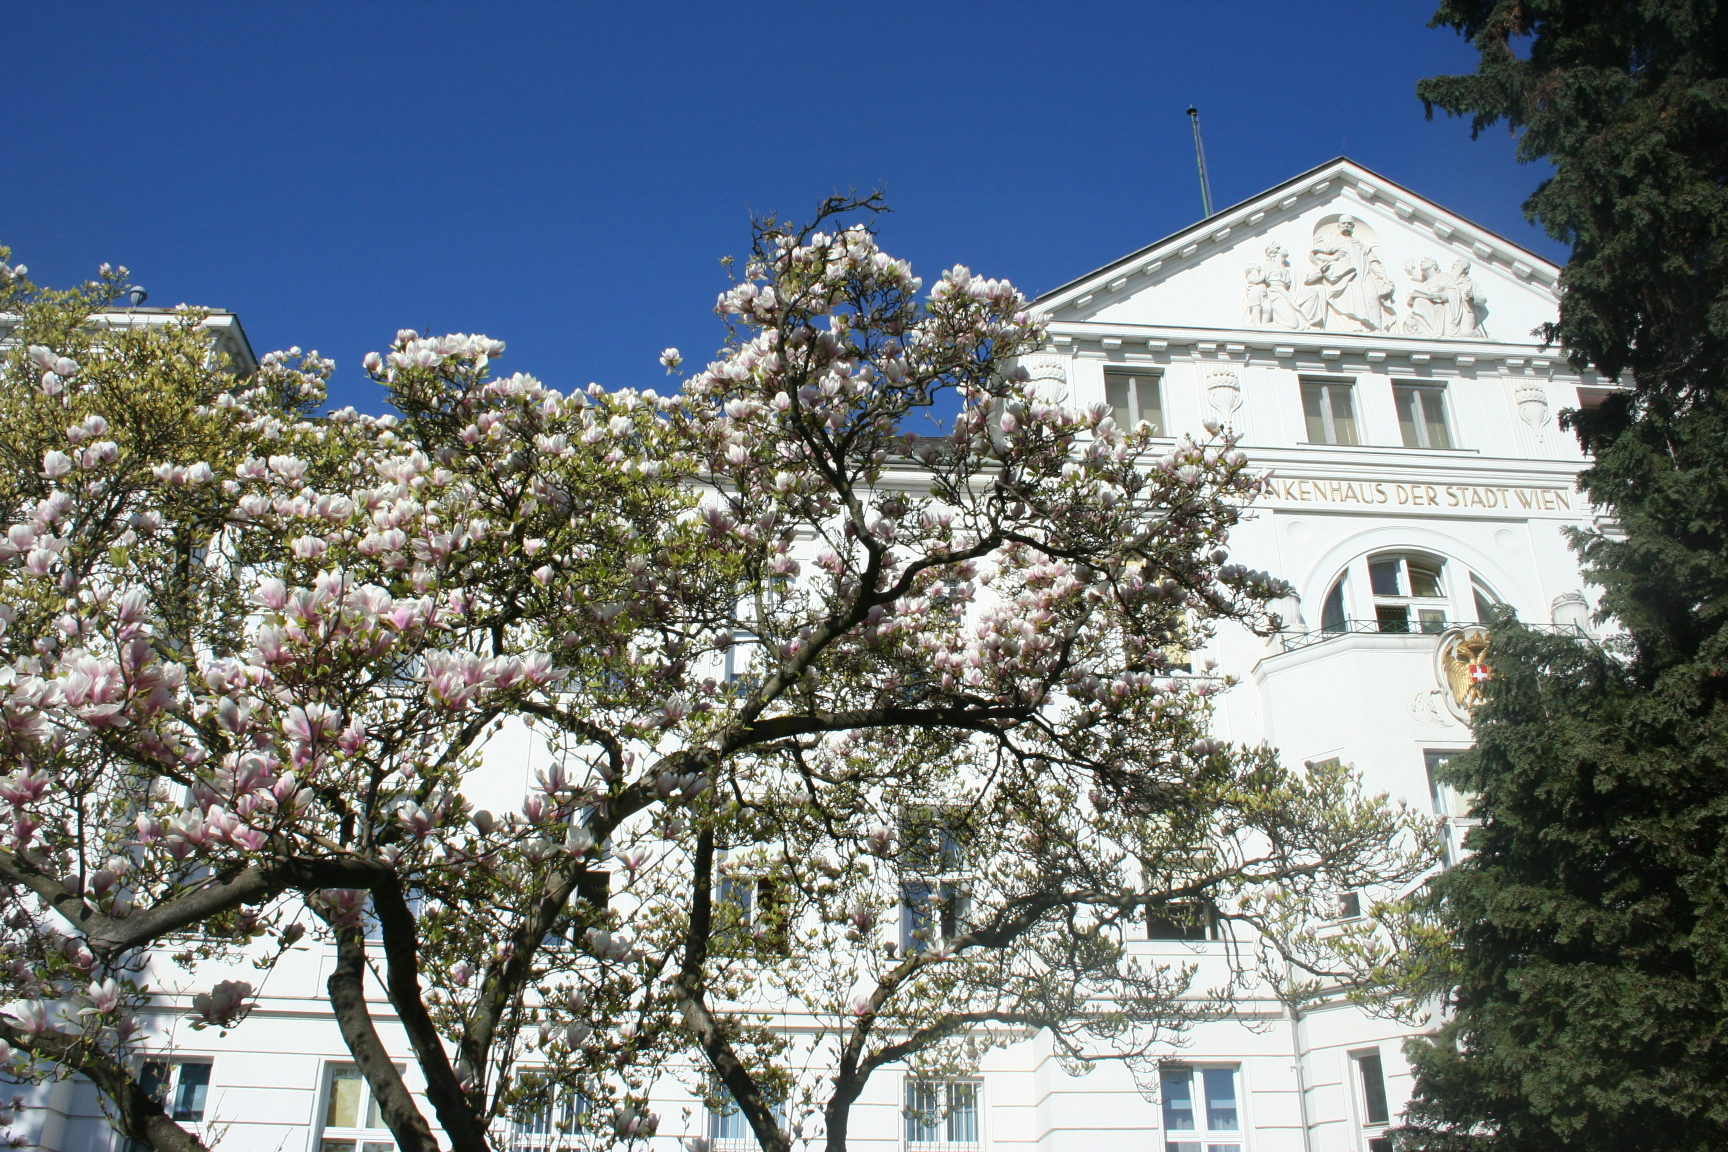 Klinik Hietzing mit blühendem Baum und blauem Himmel